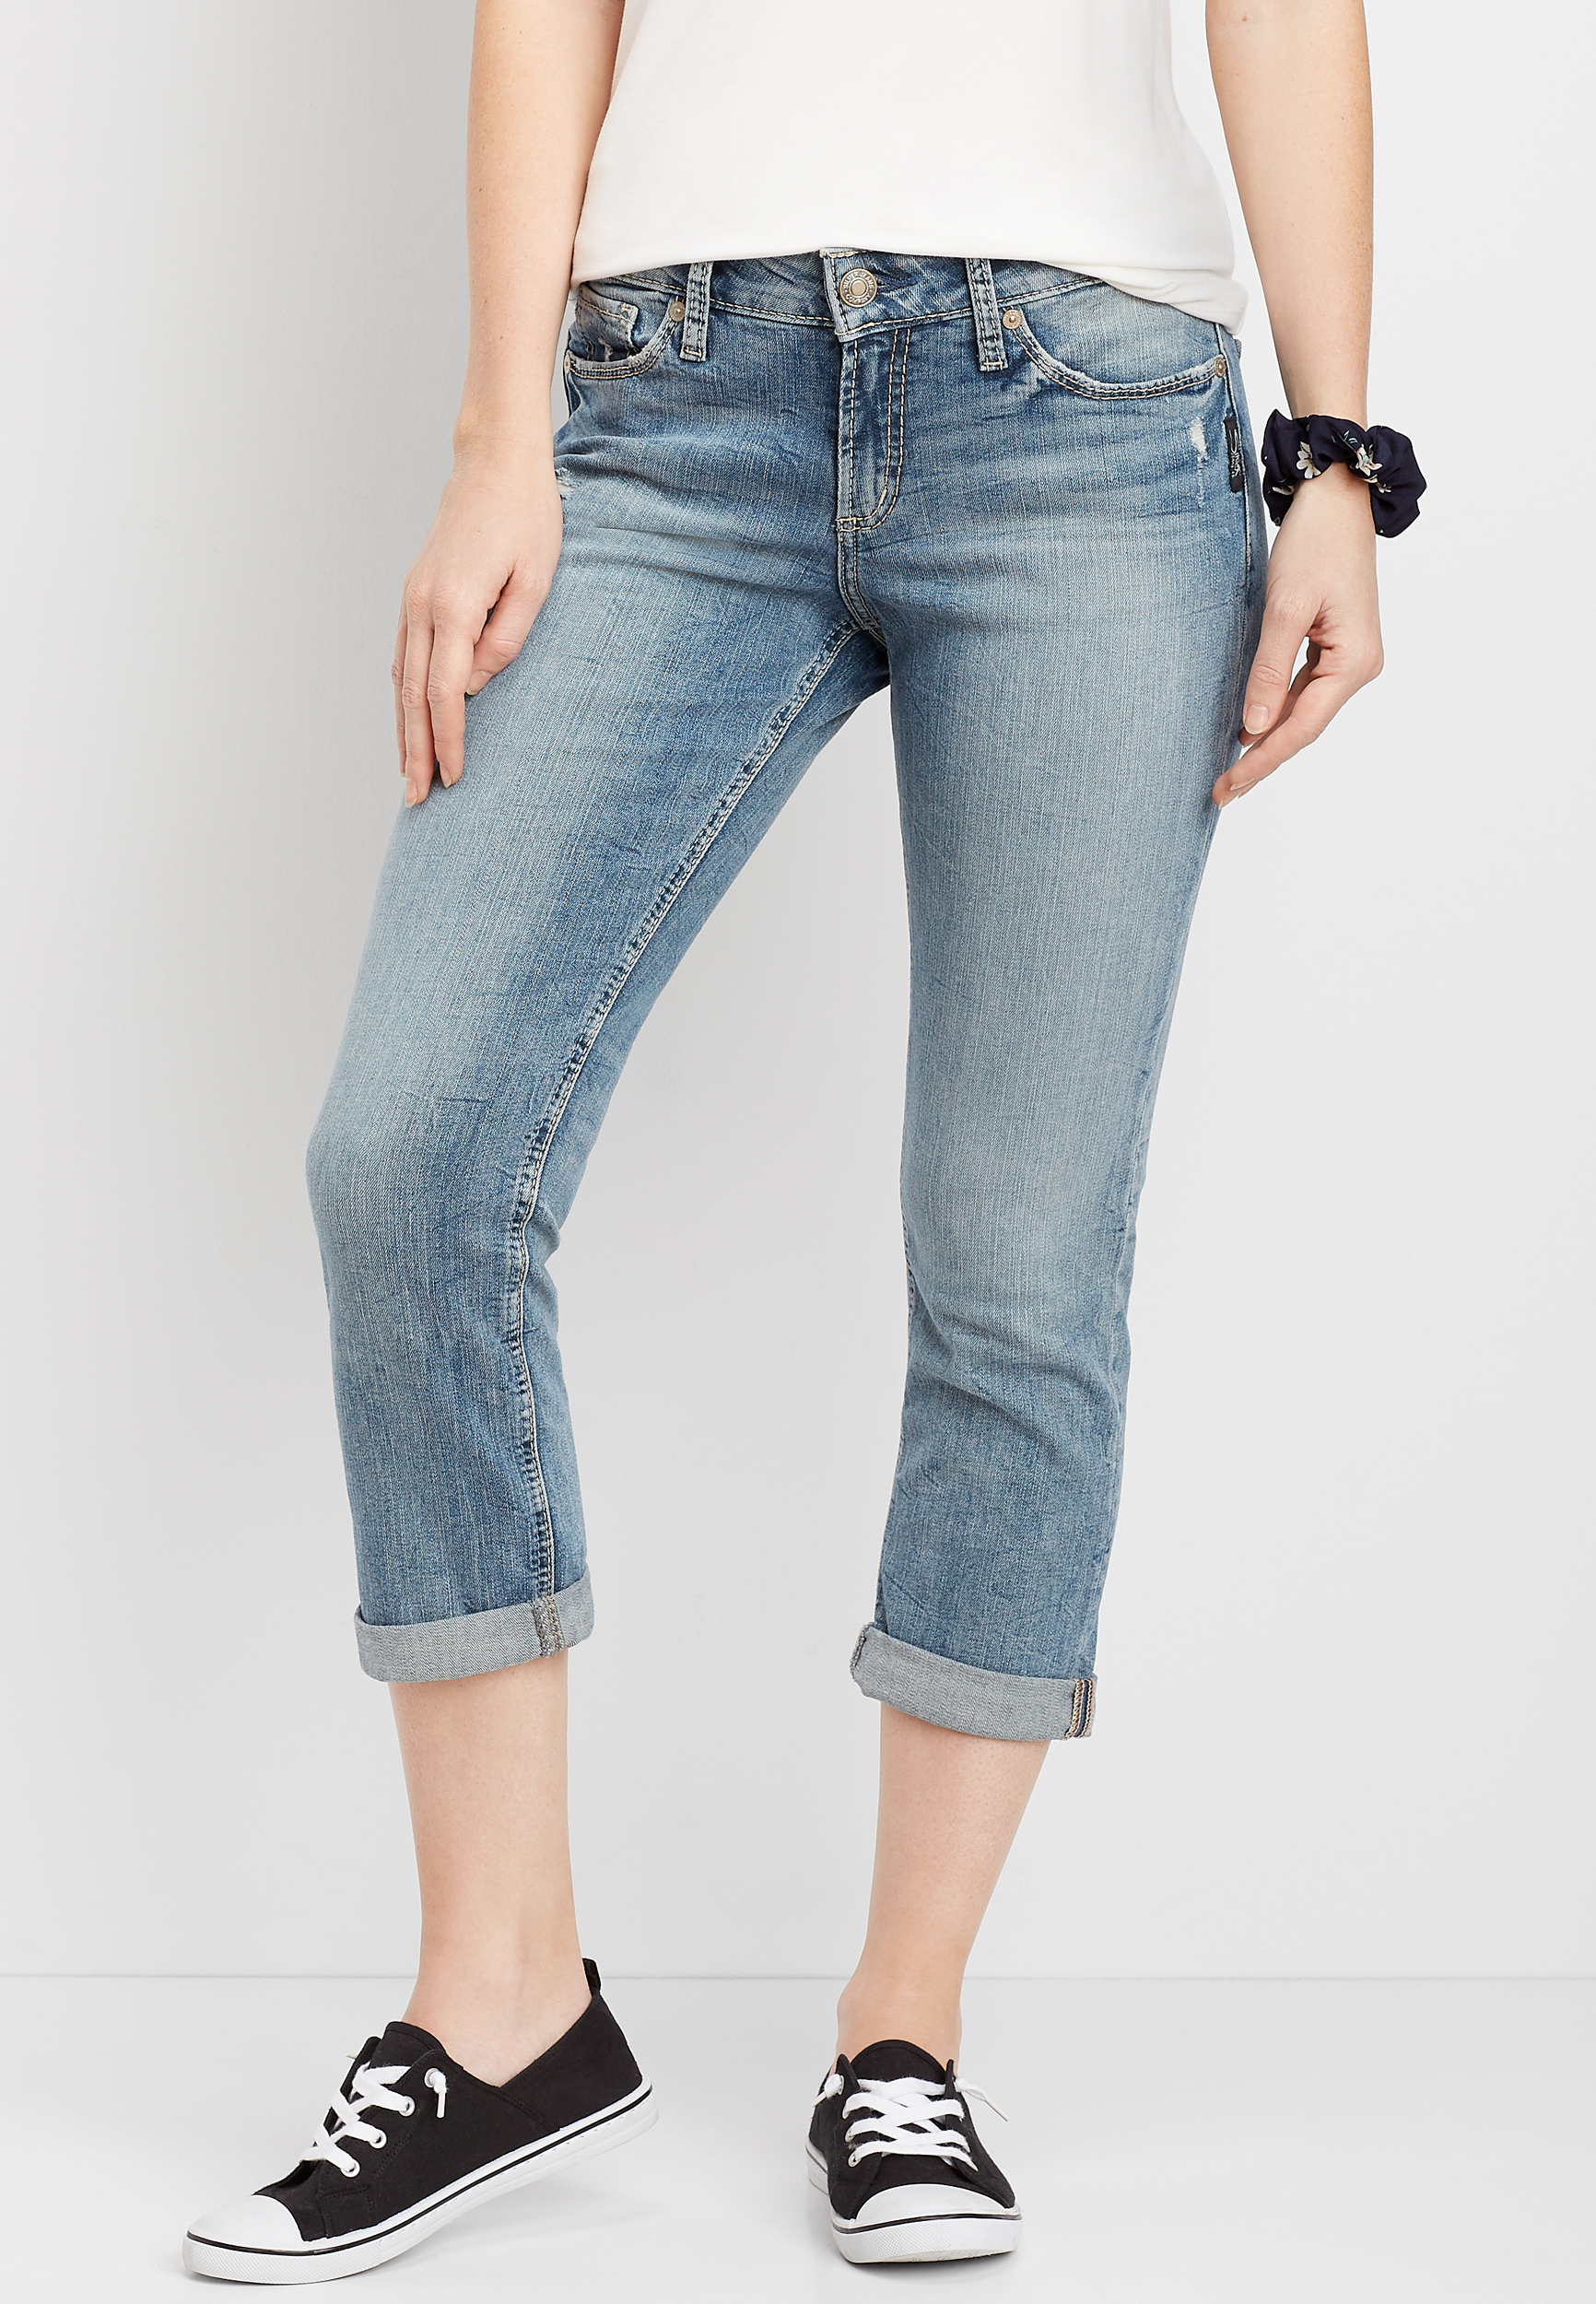 grey capri jeans